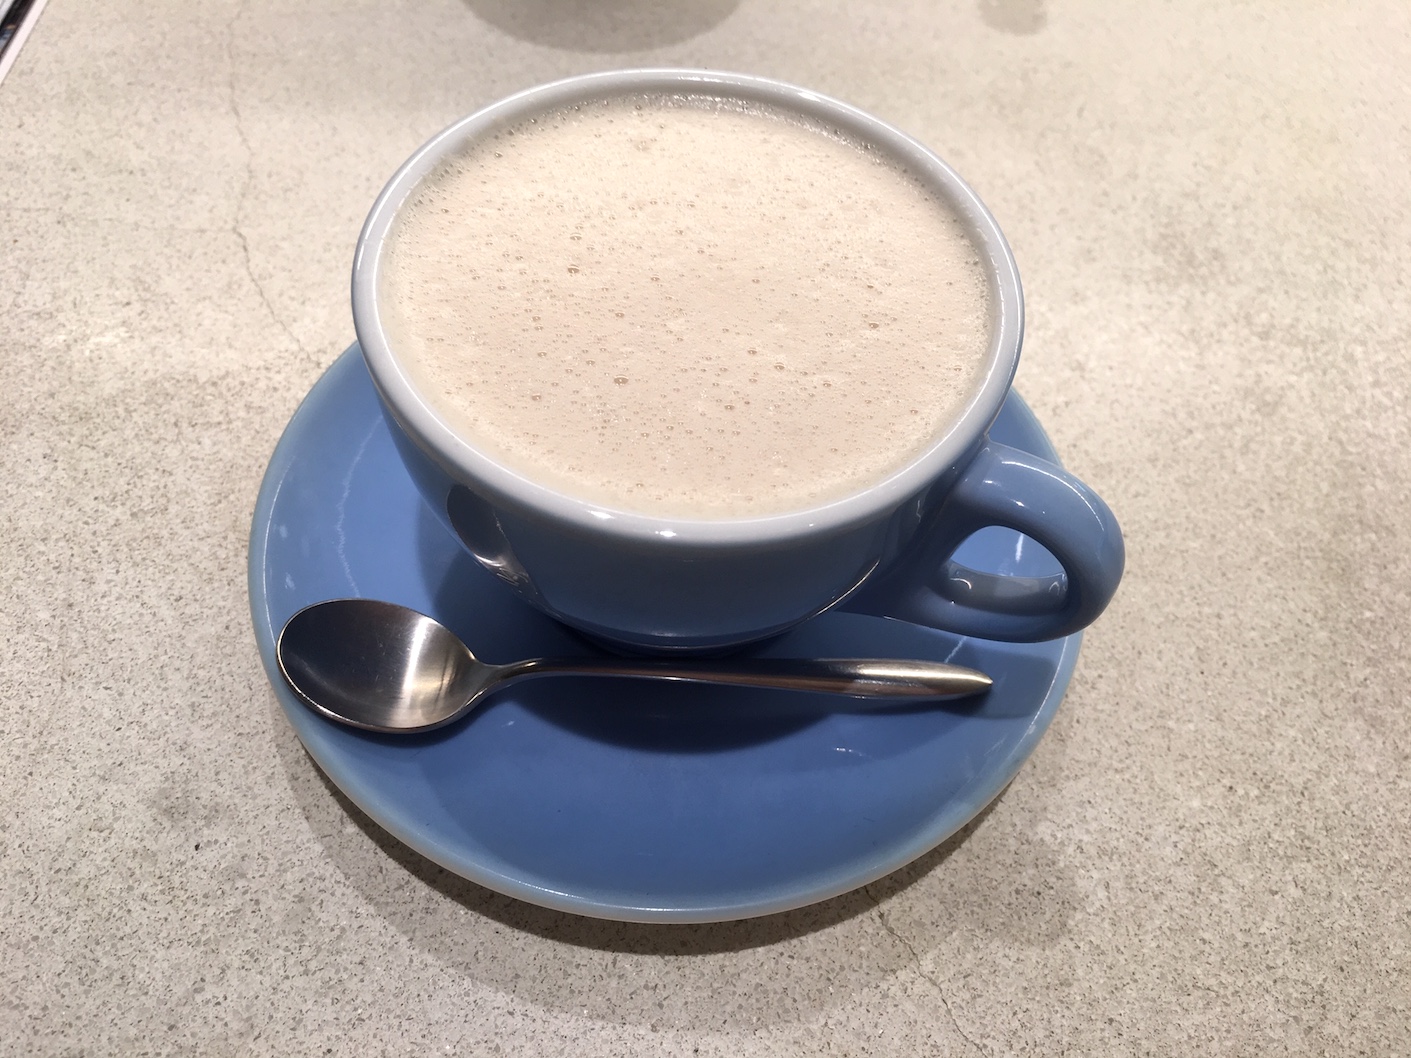 Jiyugaoka Shiro Vegan cafe chai latte